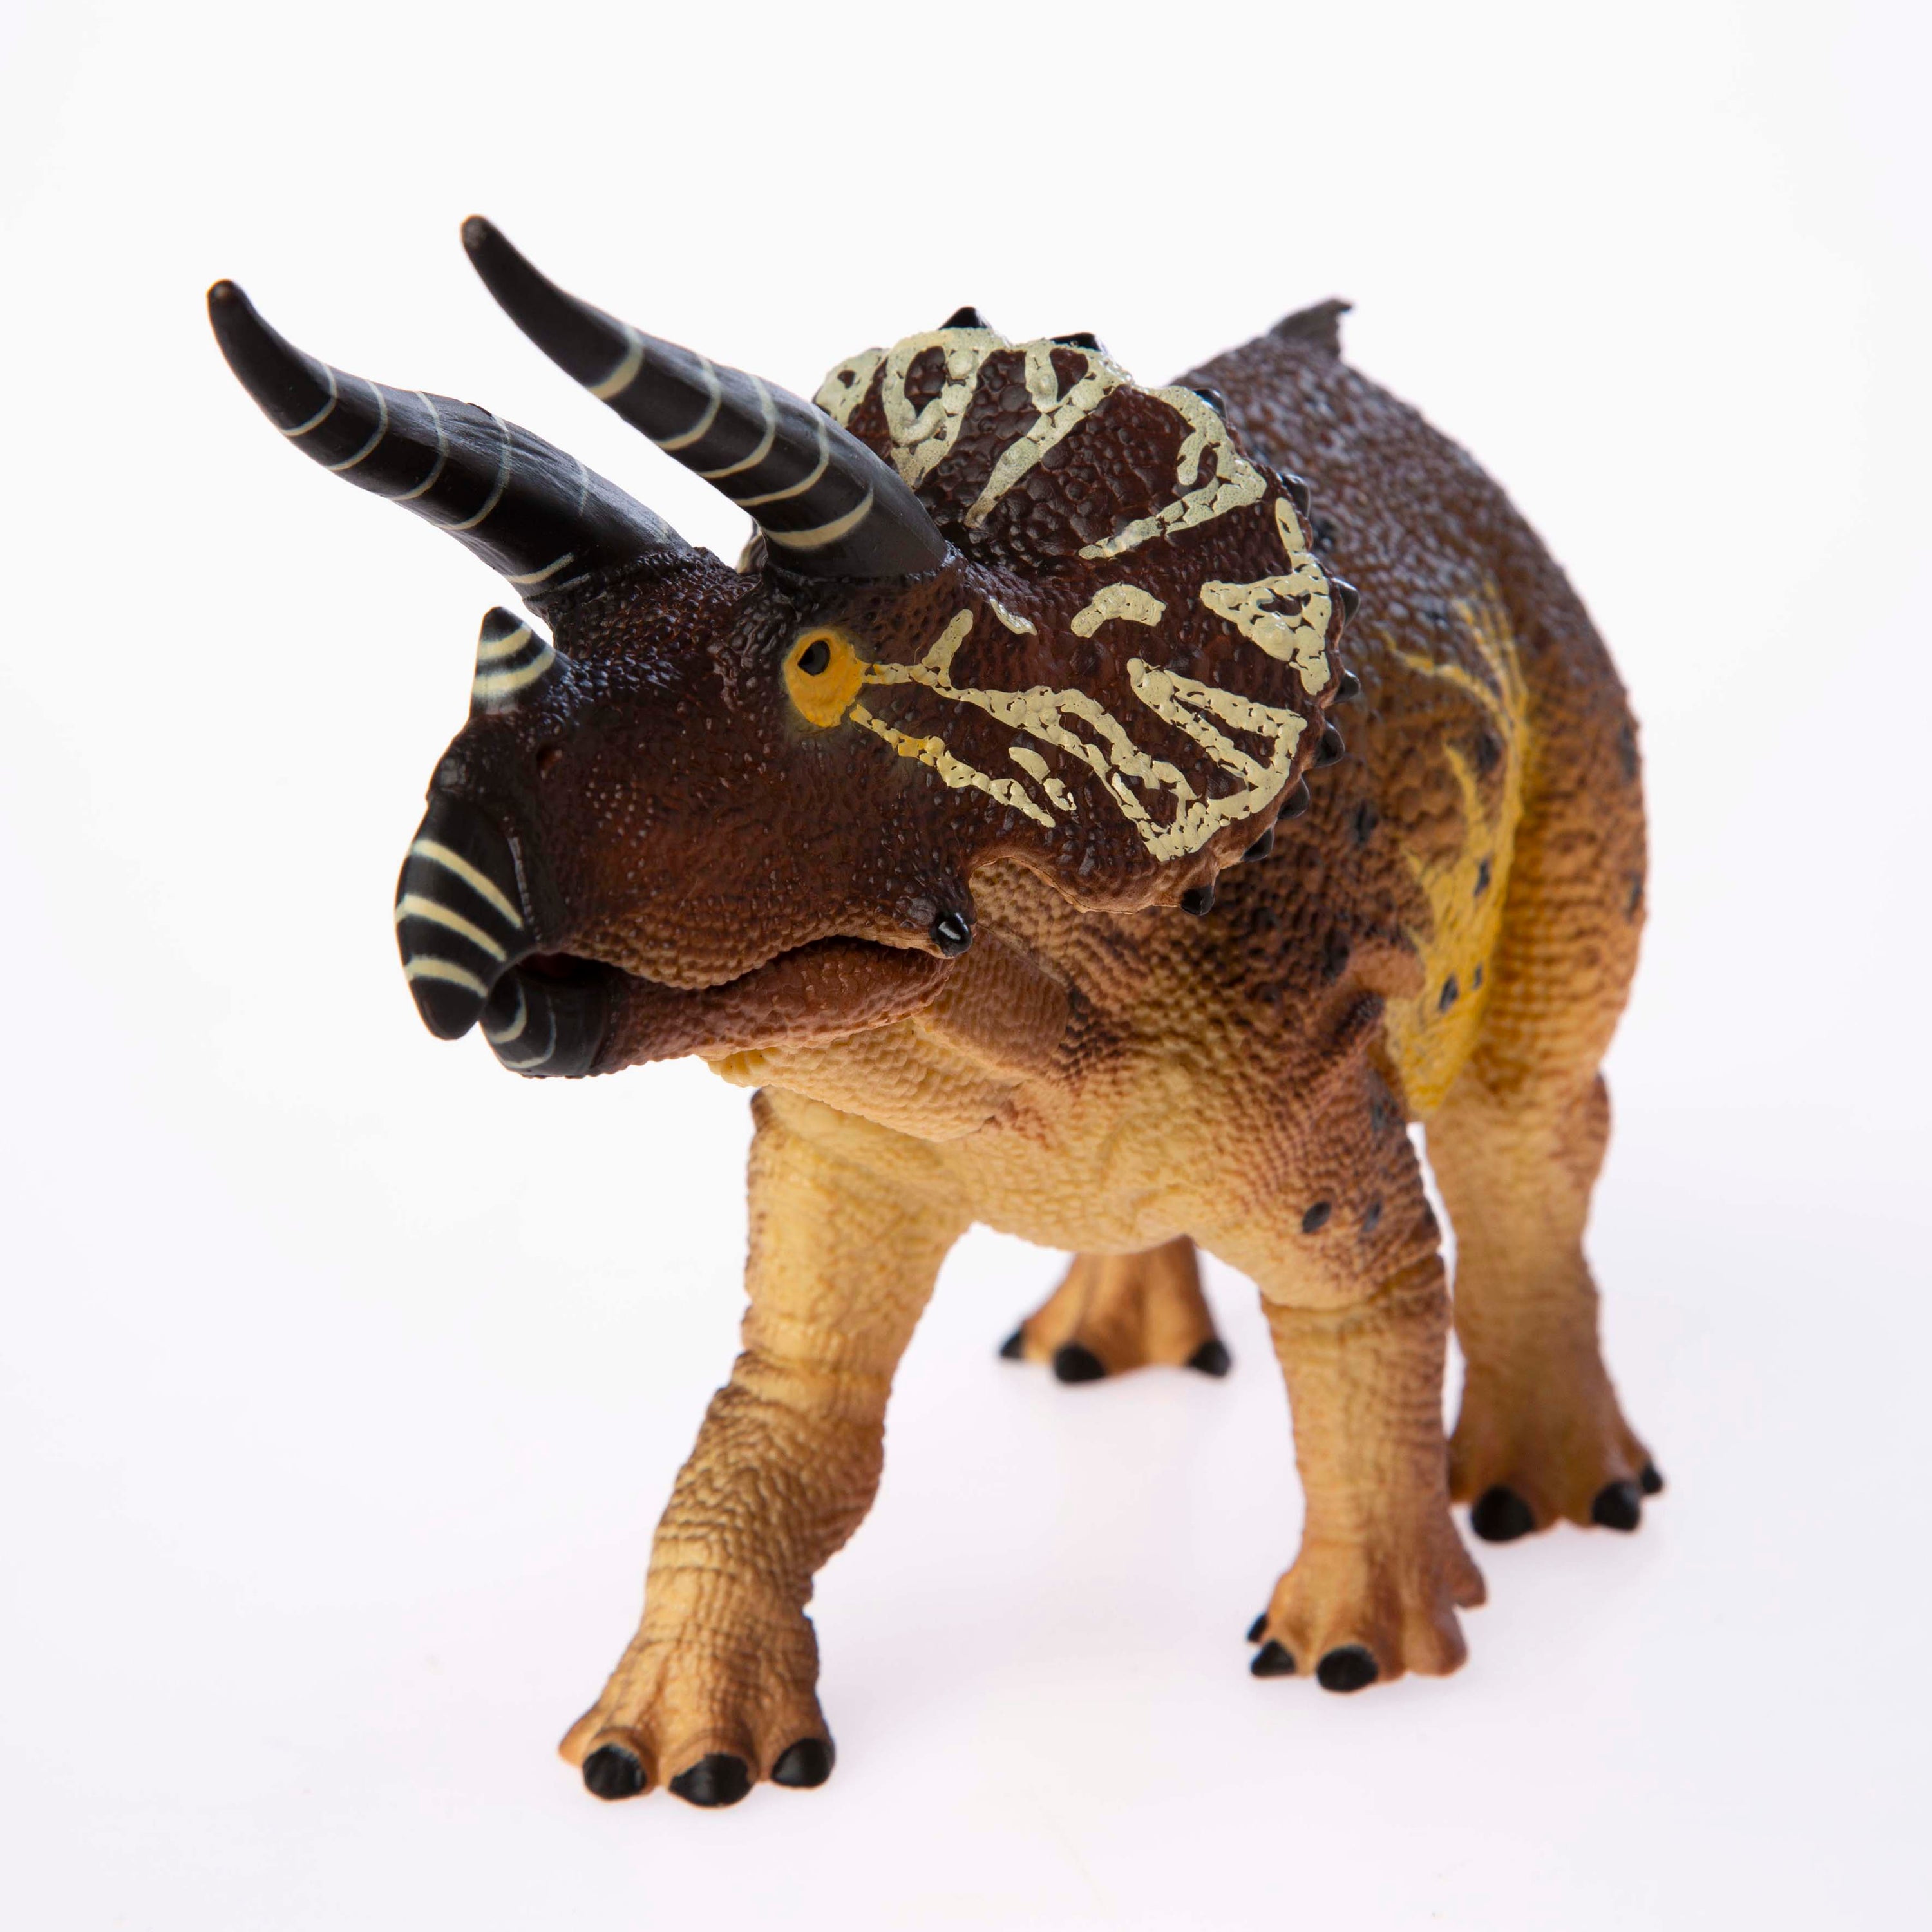 Horridus Triceratops Replica 1:40